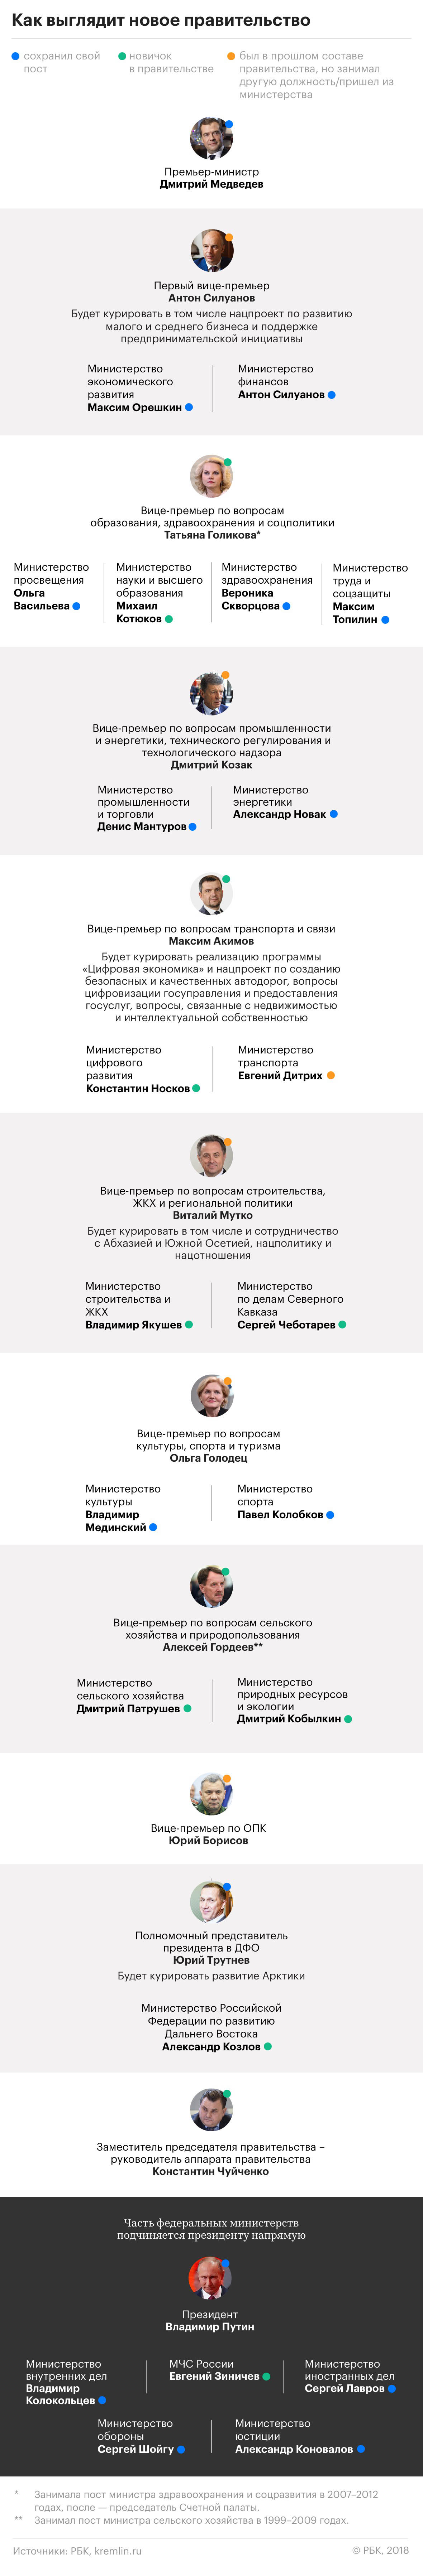 Структура нового российского правительства